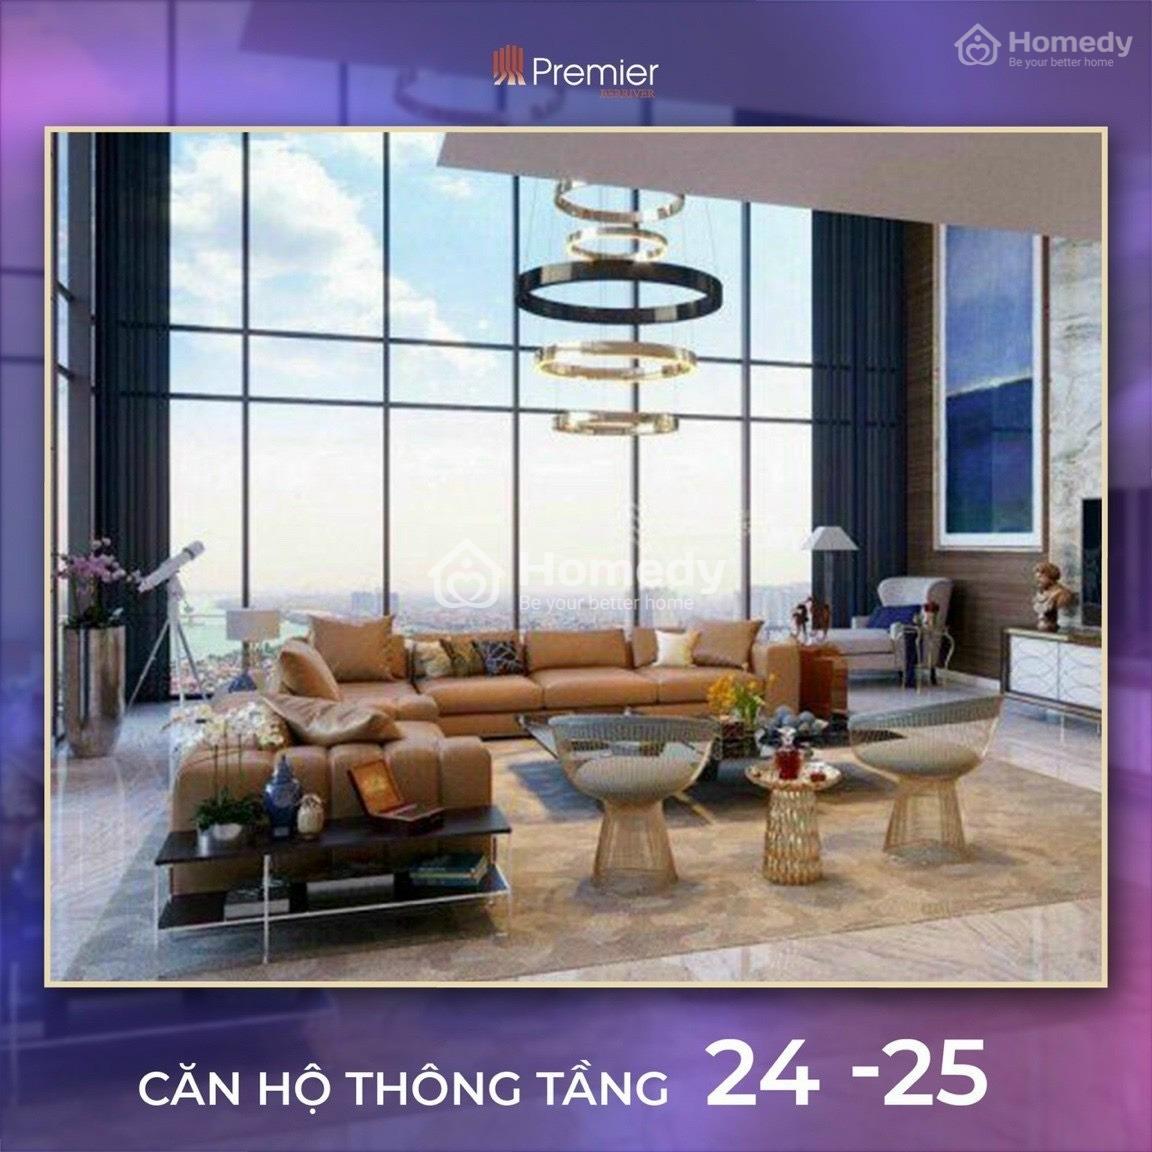 Quỹ Ngoại Giao Căn Duplex Penthouse Tại Dự Án Berriver 390 Nguyễn Văn Cừ, Long Biên, Hà Nội